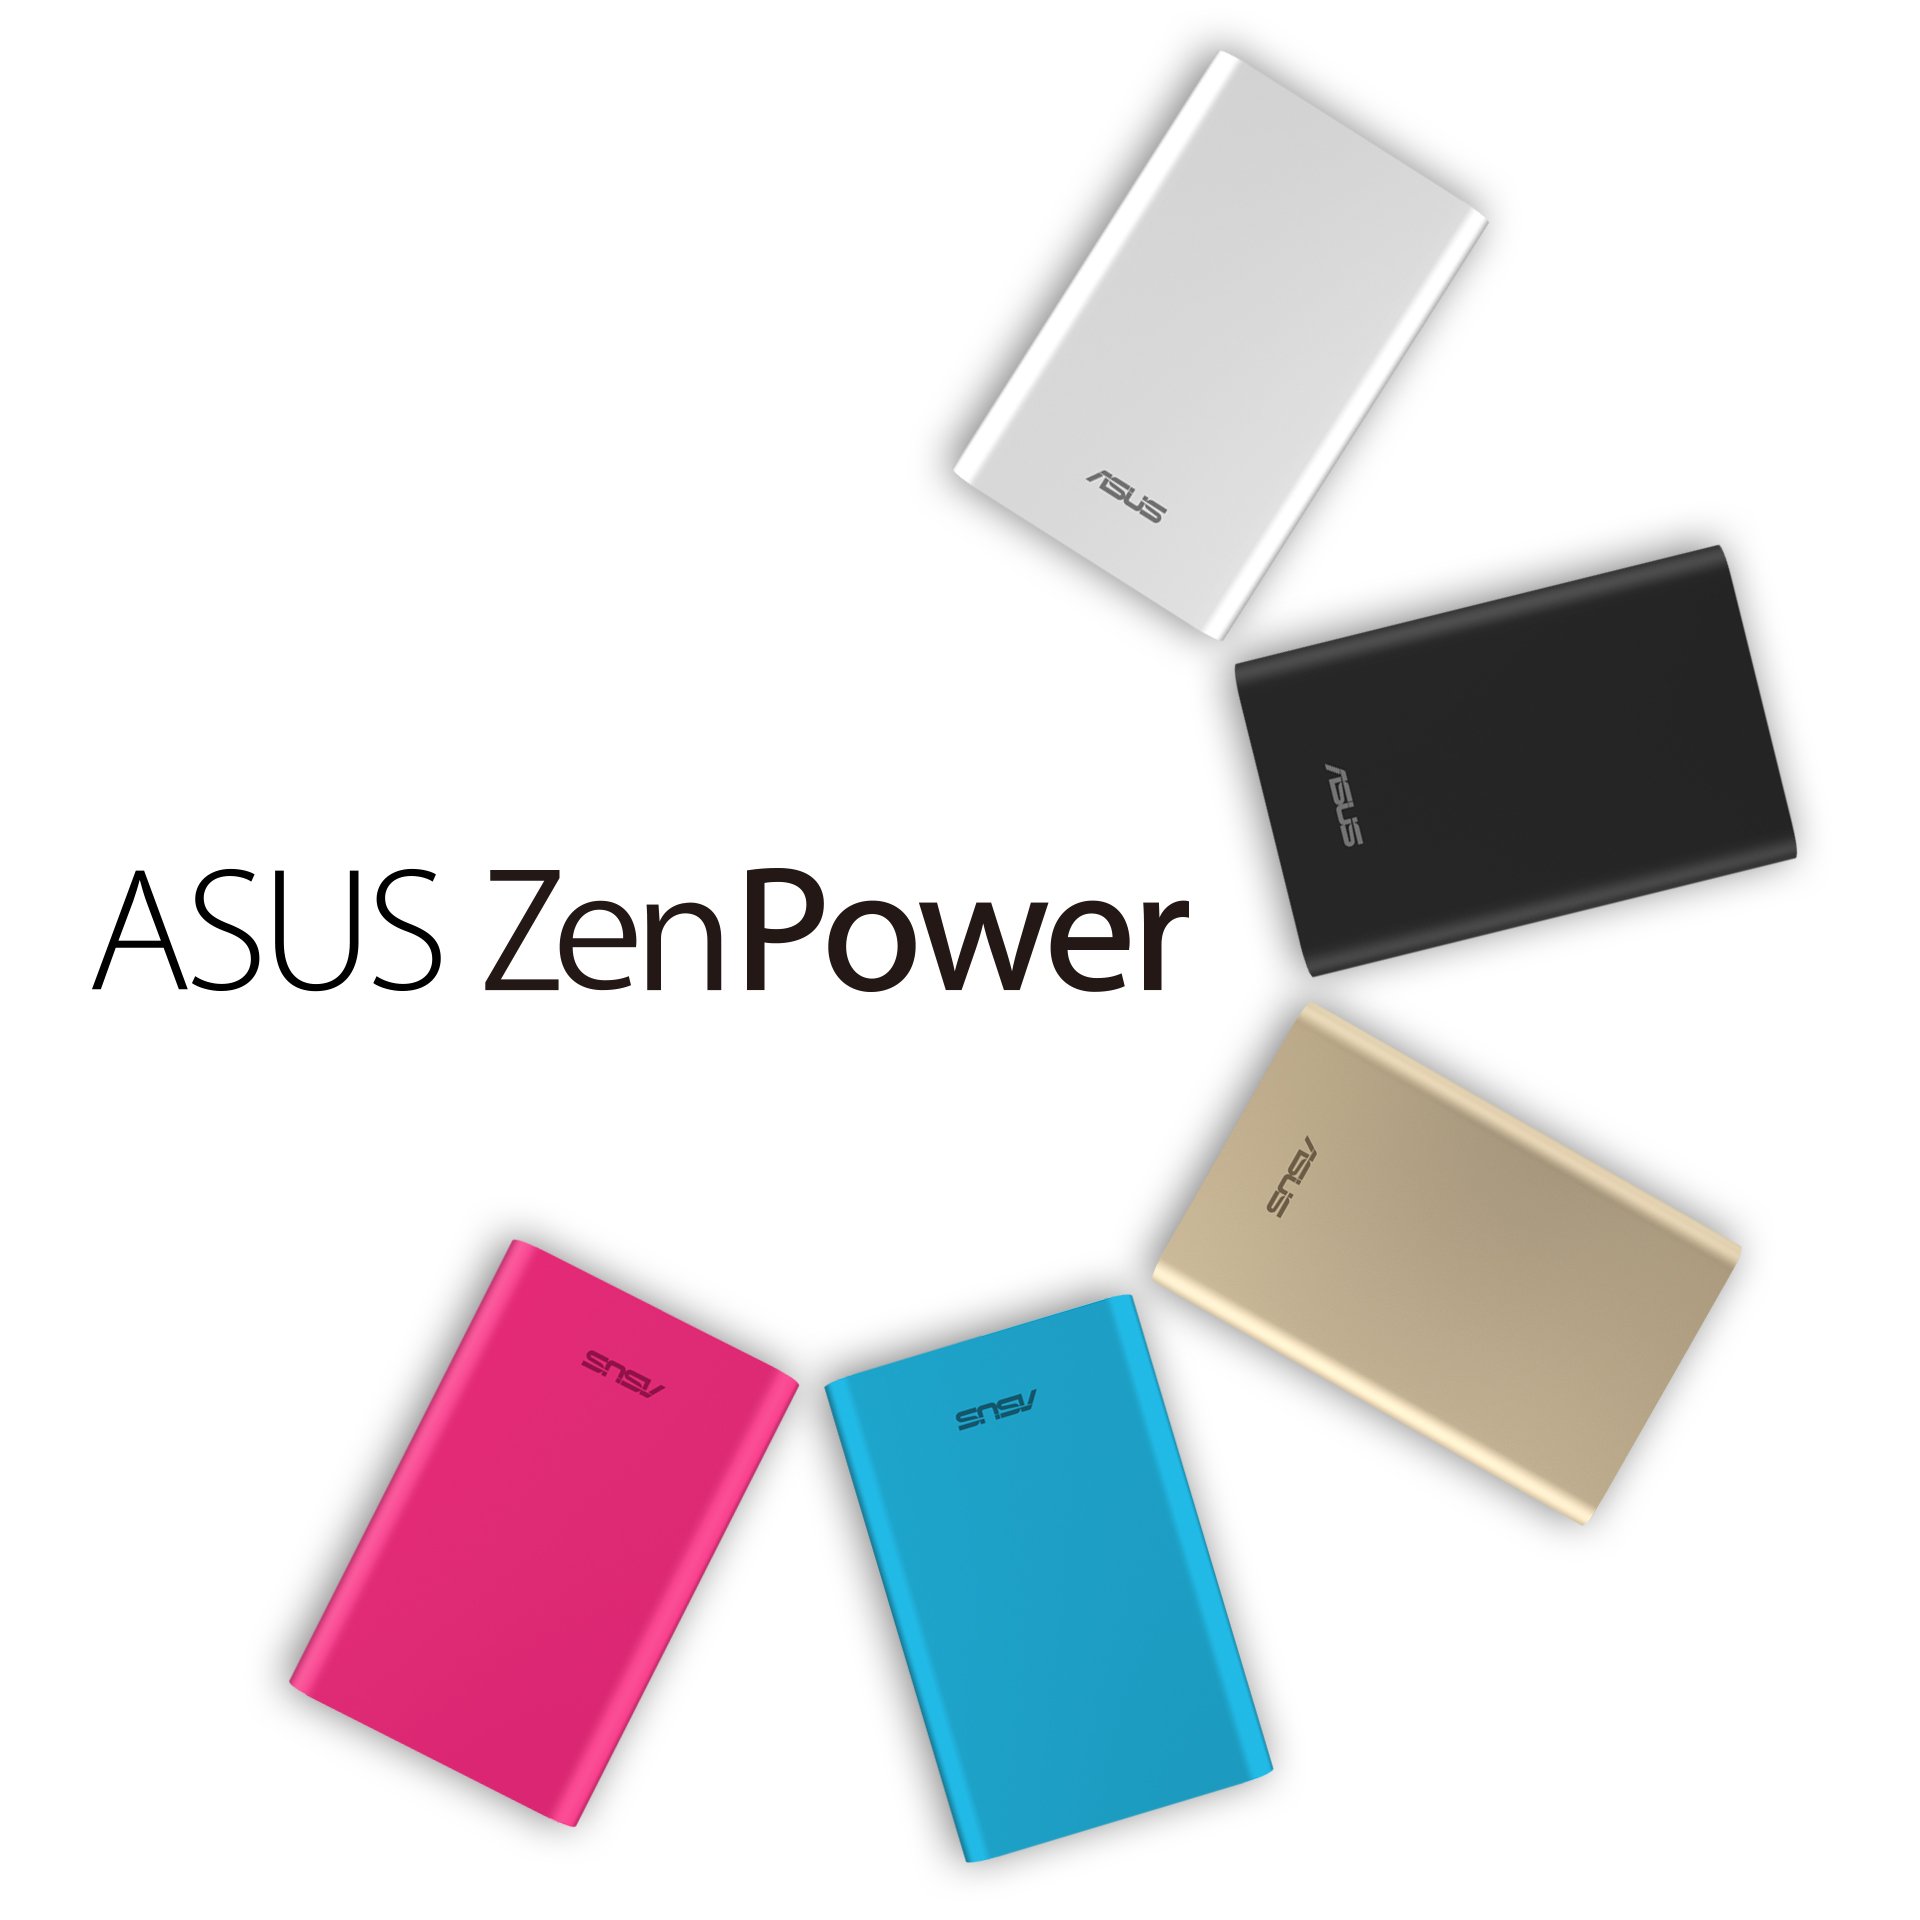 Asus ZenPower, “Kartu Kredit” Berdaya Besar